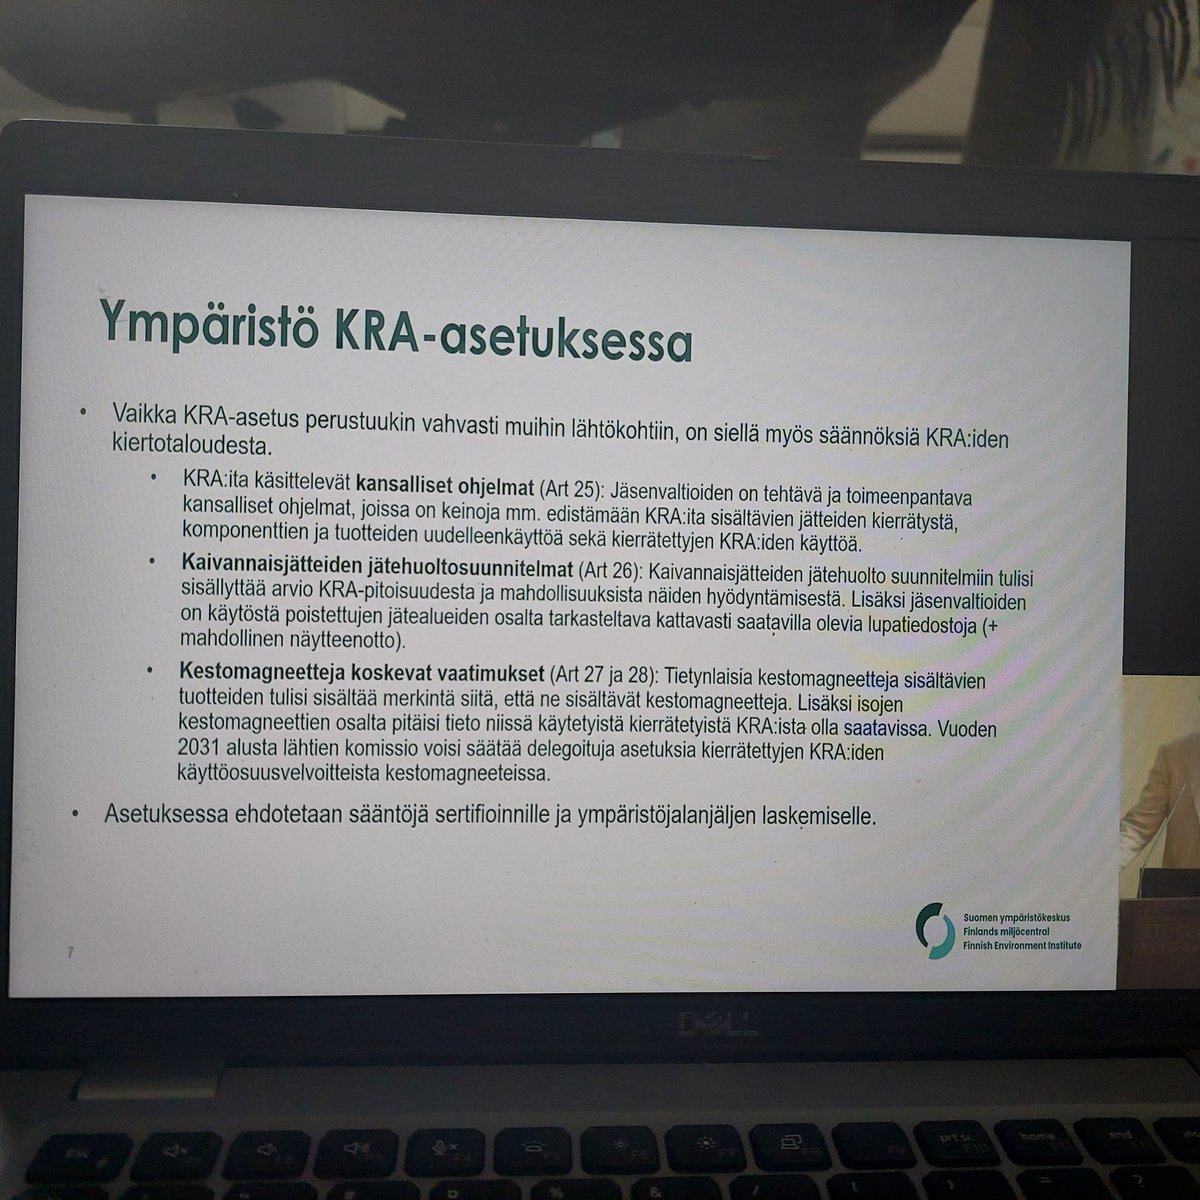 Aiheesta jatkaa @turunen_topi kertoen mistä KRA-asetuksen tavoitteissa kyse. Se ei ole ympäristöasetus vaikka sisältää kierrätys- ja kestävyystavoitteita, vaan kyse EU:lle vihreän siirtymän ym. kannalta tärkeiden raaka-aineiden toimitusvarmuuden turvaamisesta ⚒️